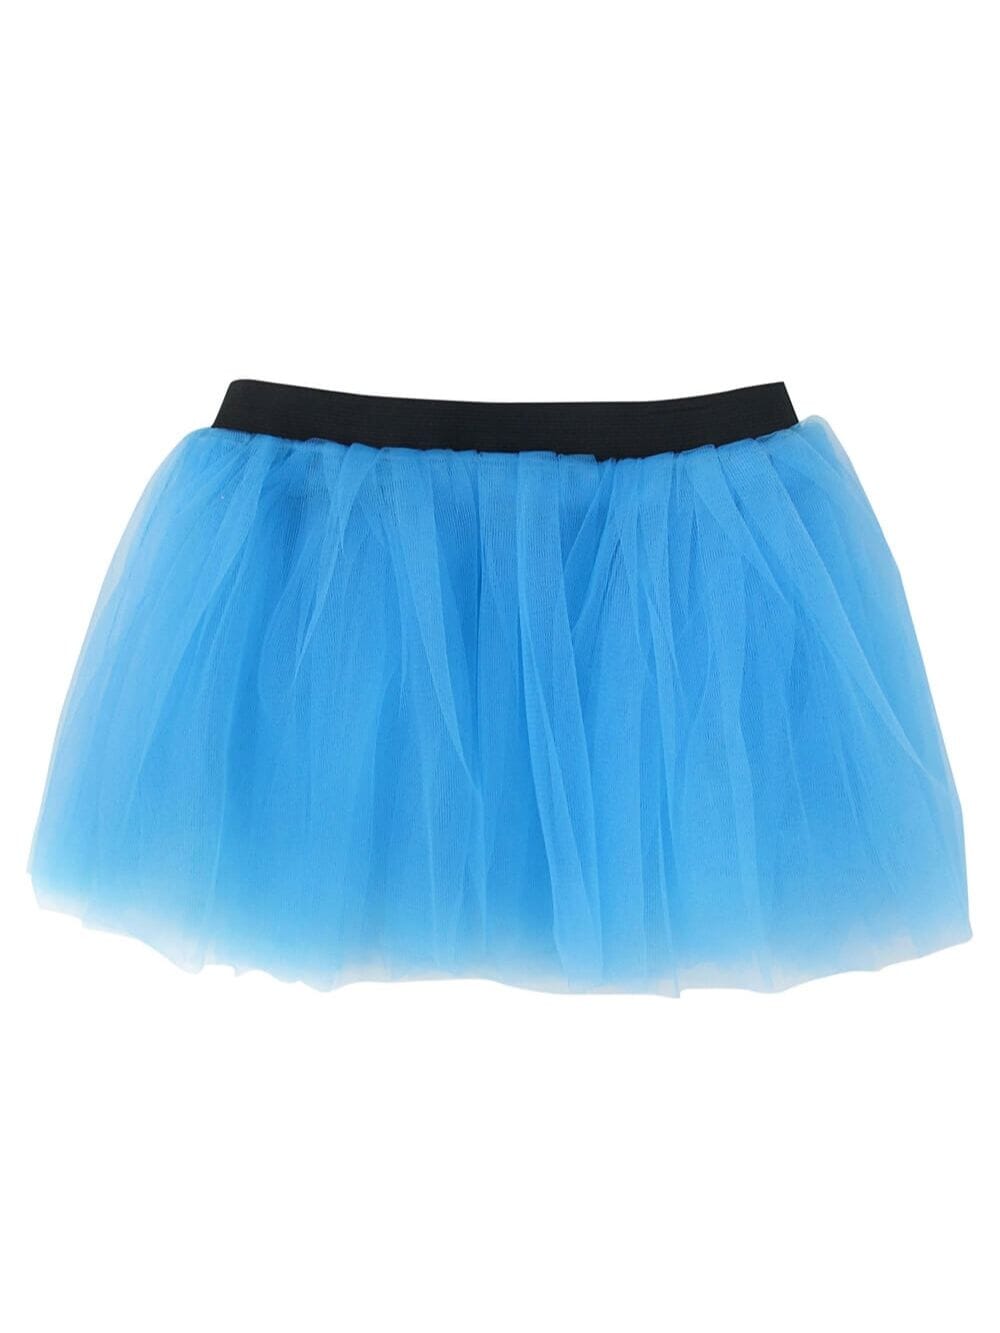 Light Blue Adult Size Women's 5K Running Tutu Skirt Costume - Sydney So Sweet